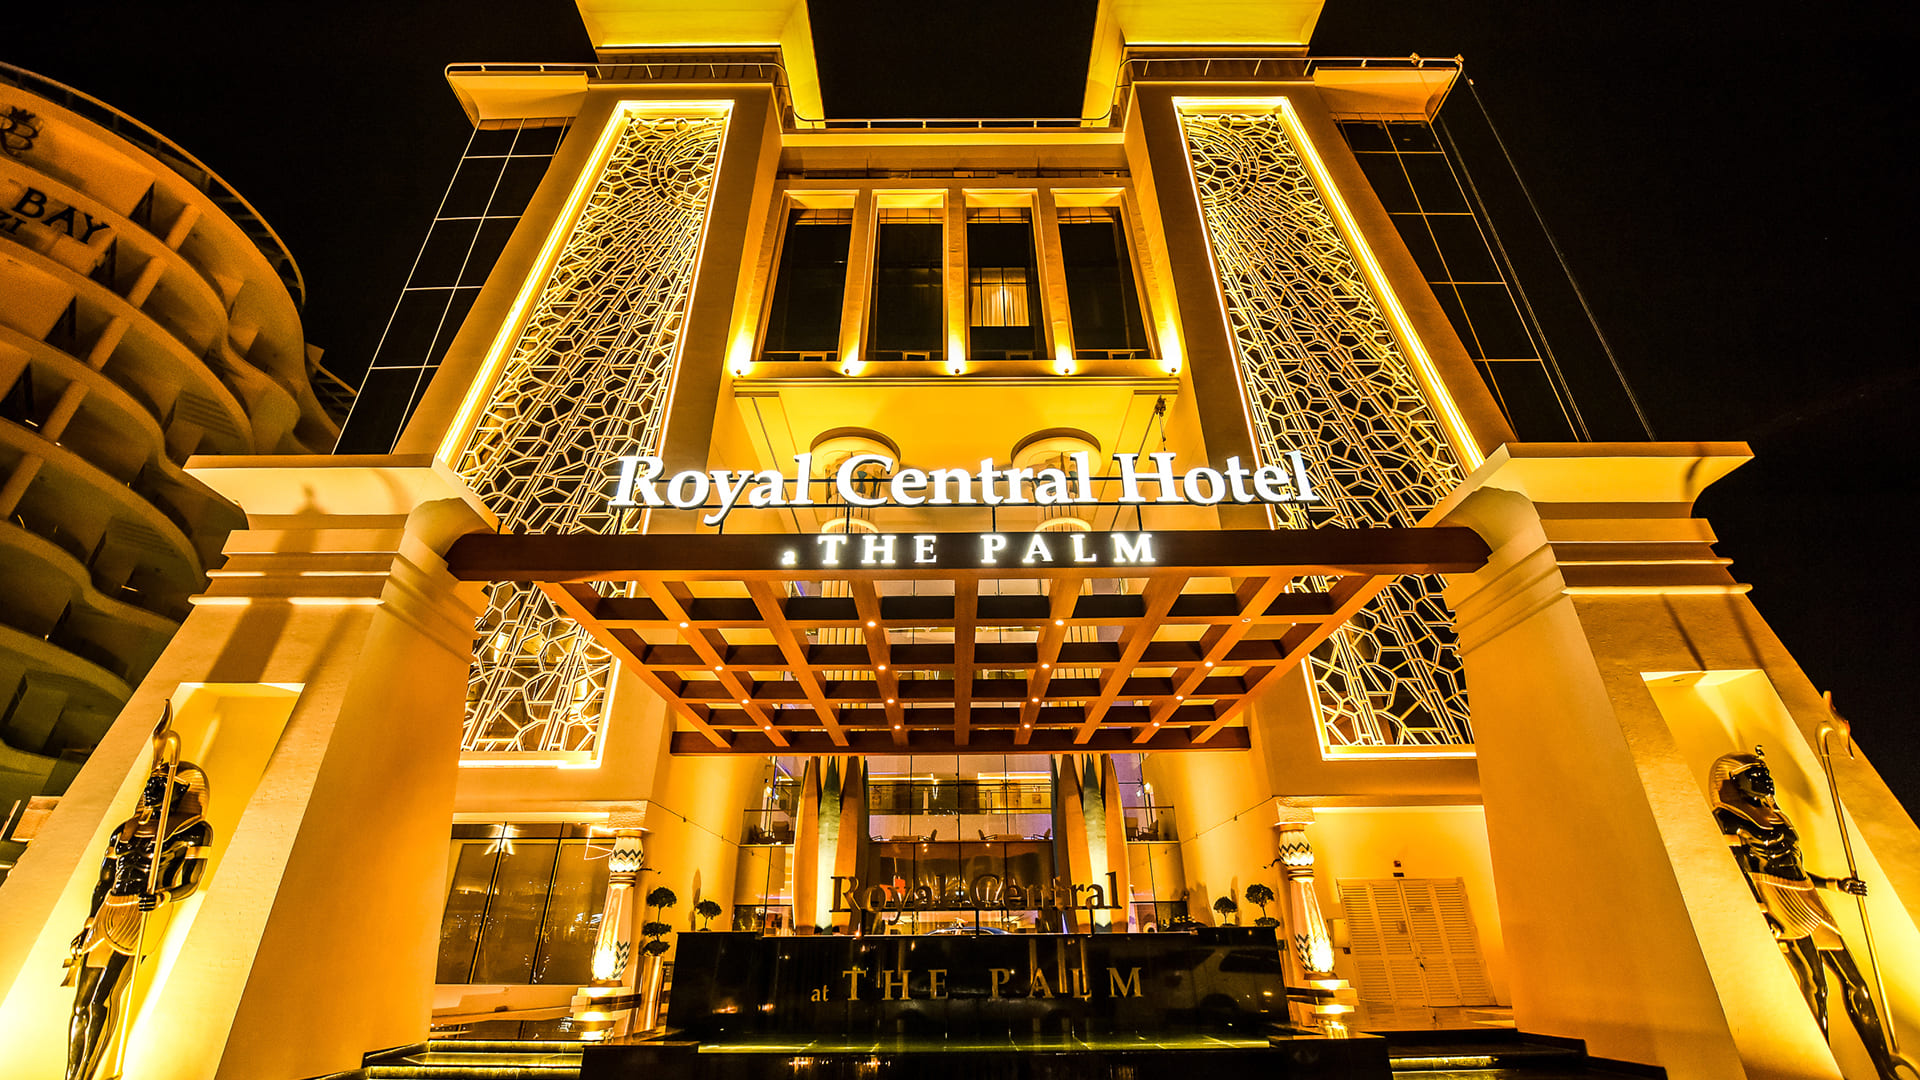 Royal-Central-Hotel-The-Palm Star Facade Lighting-Outdoor Lighting - Royal Central Hotel The Palm Facade Lighting